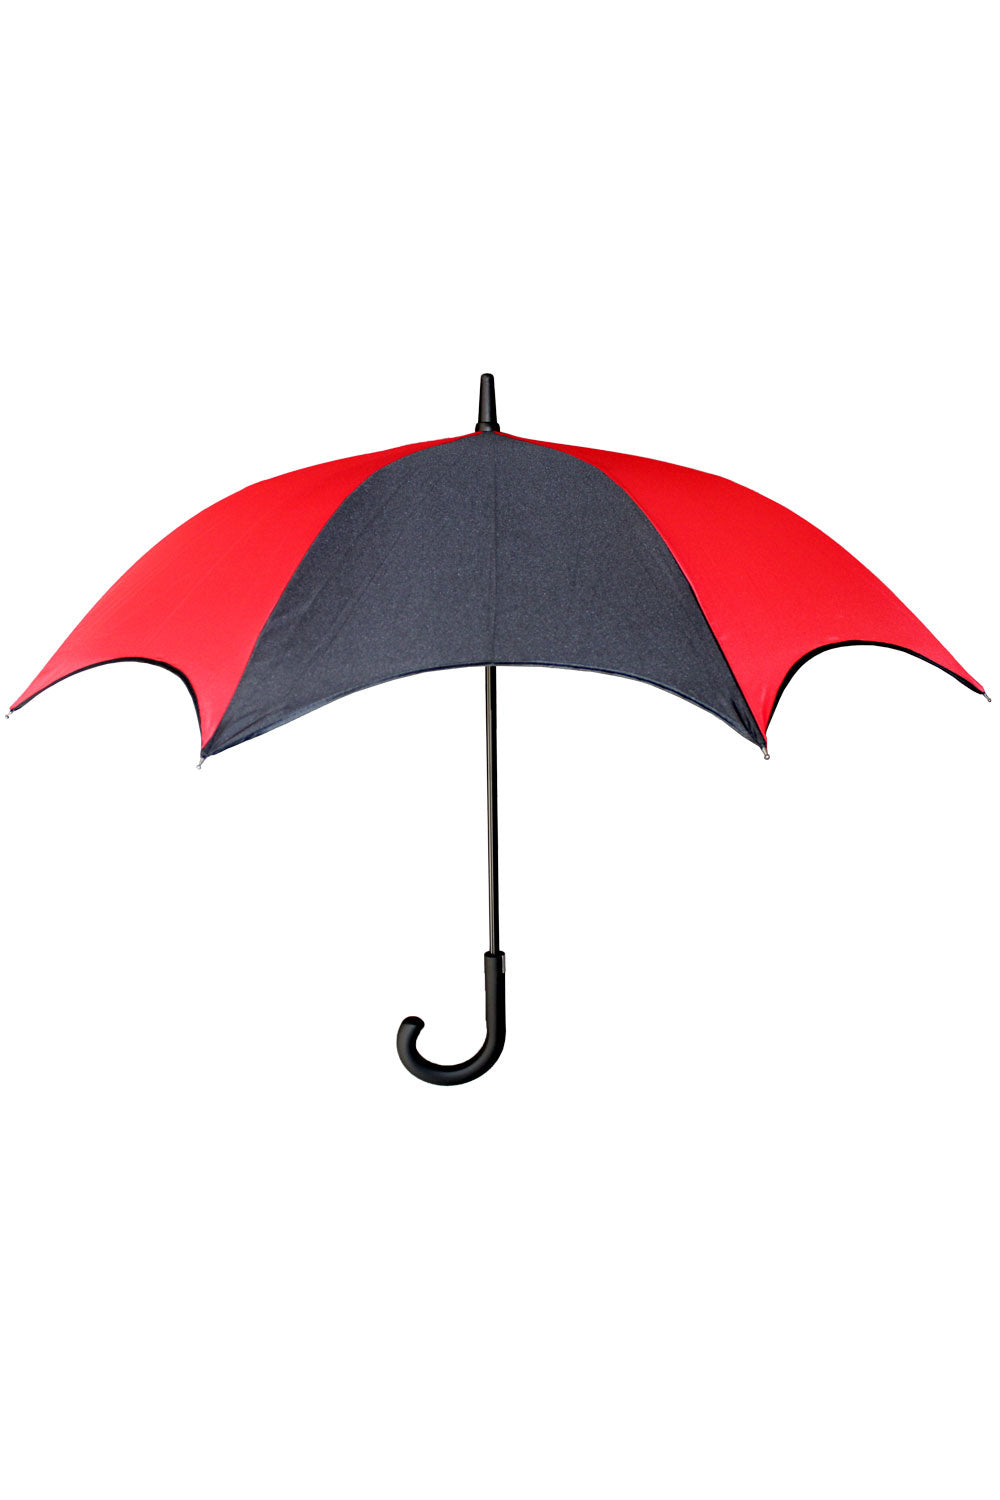 gothic vintage umbrella